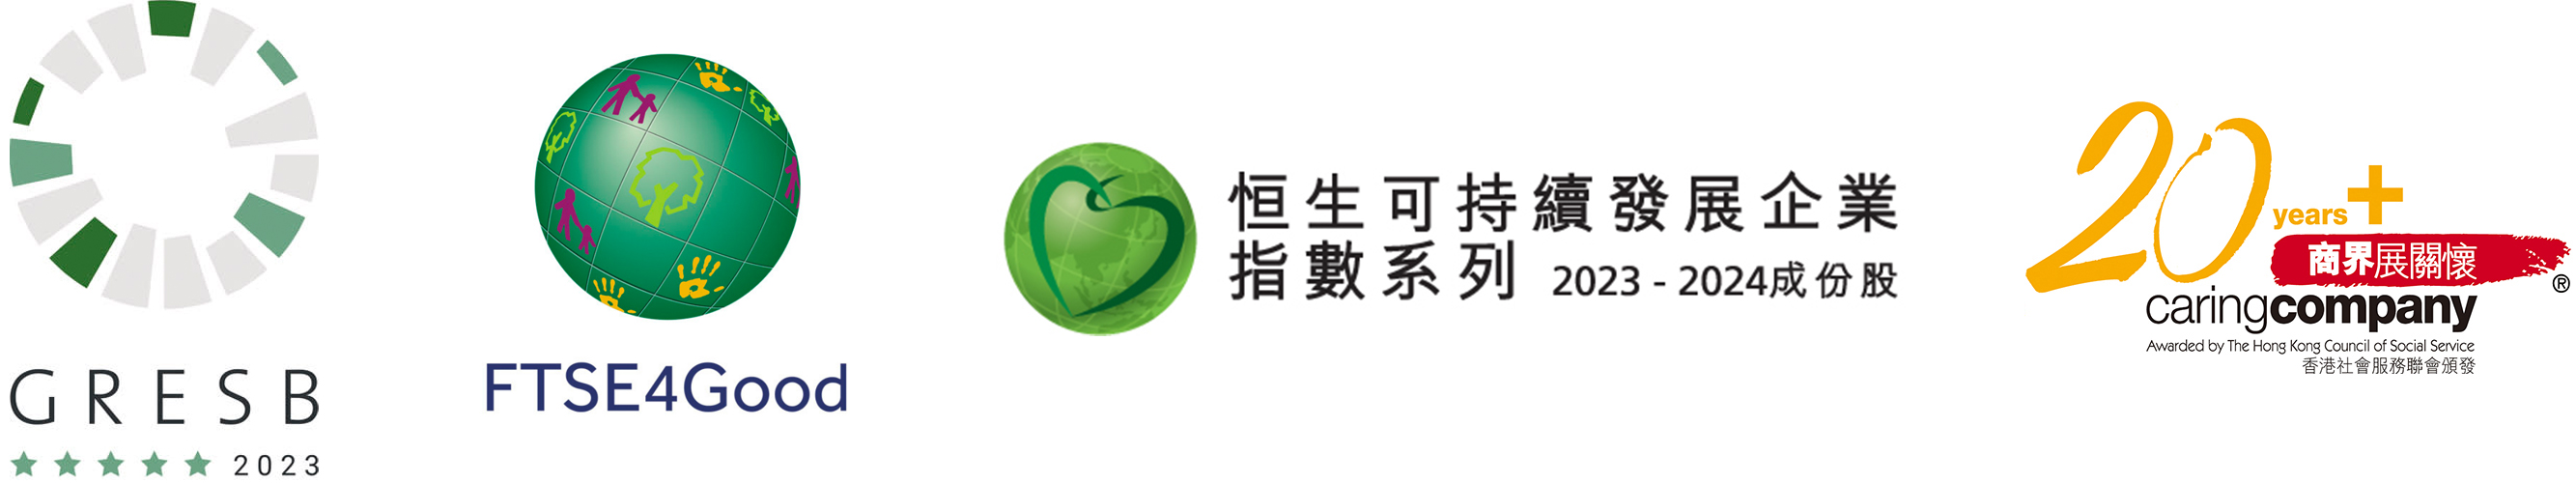 minisite logo